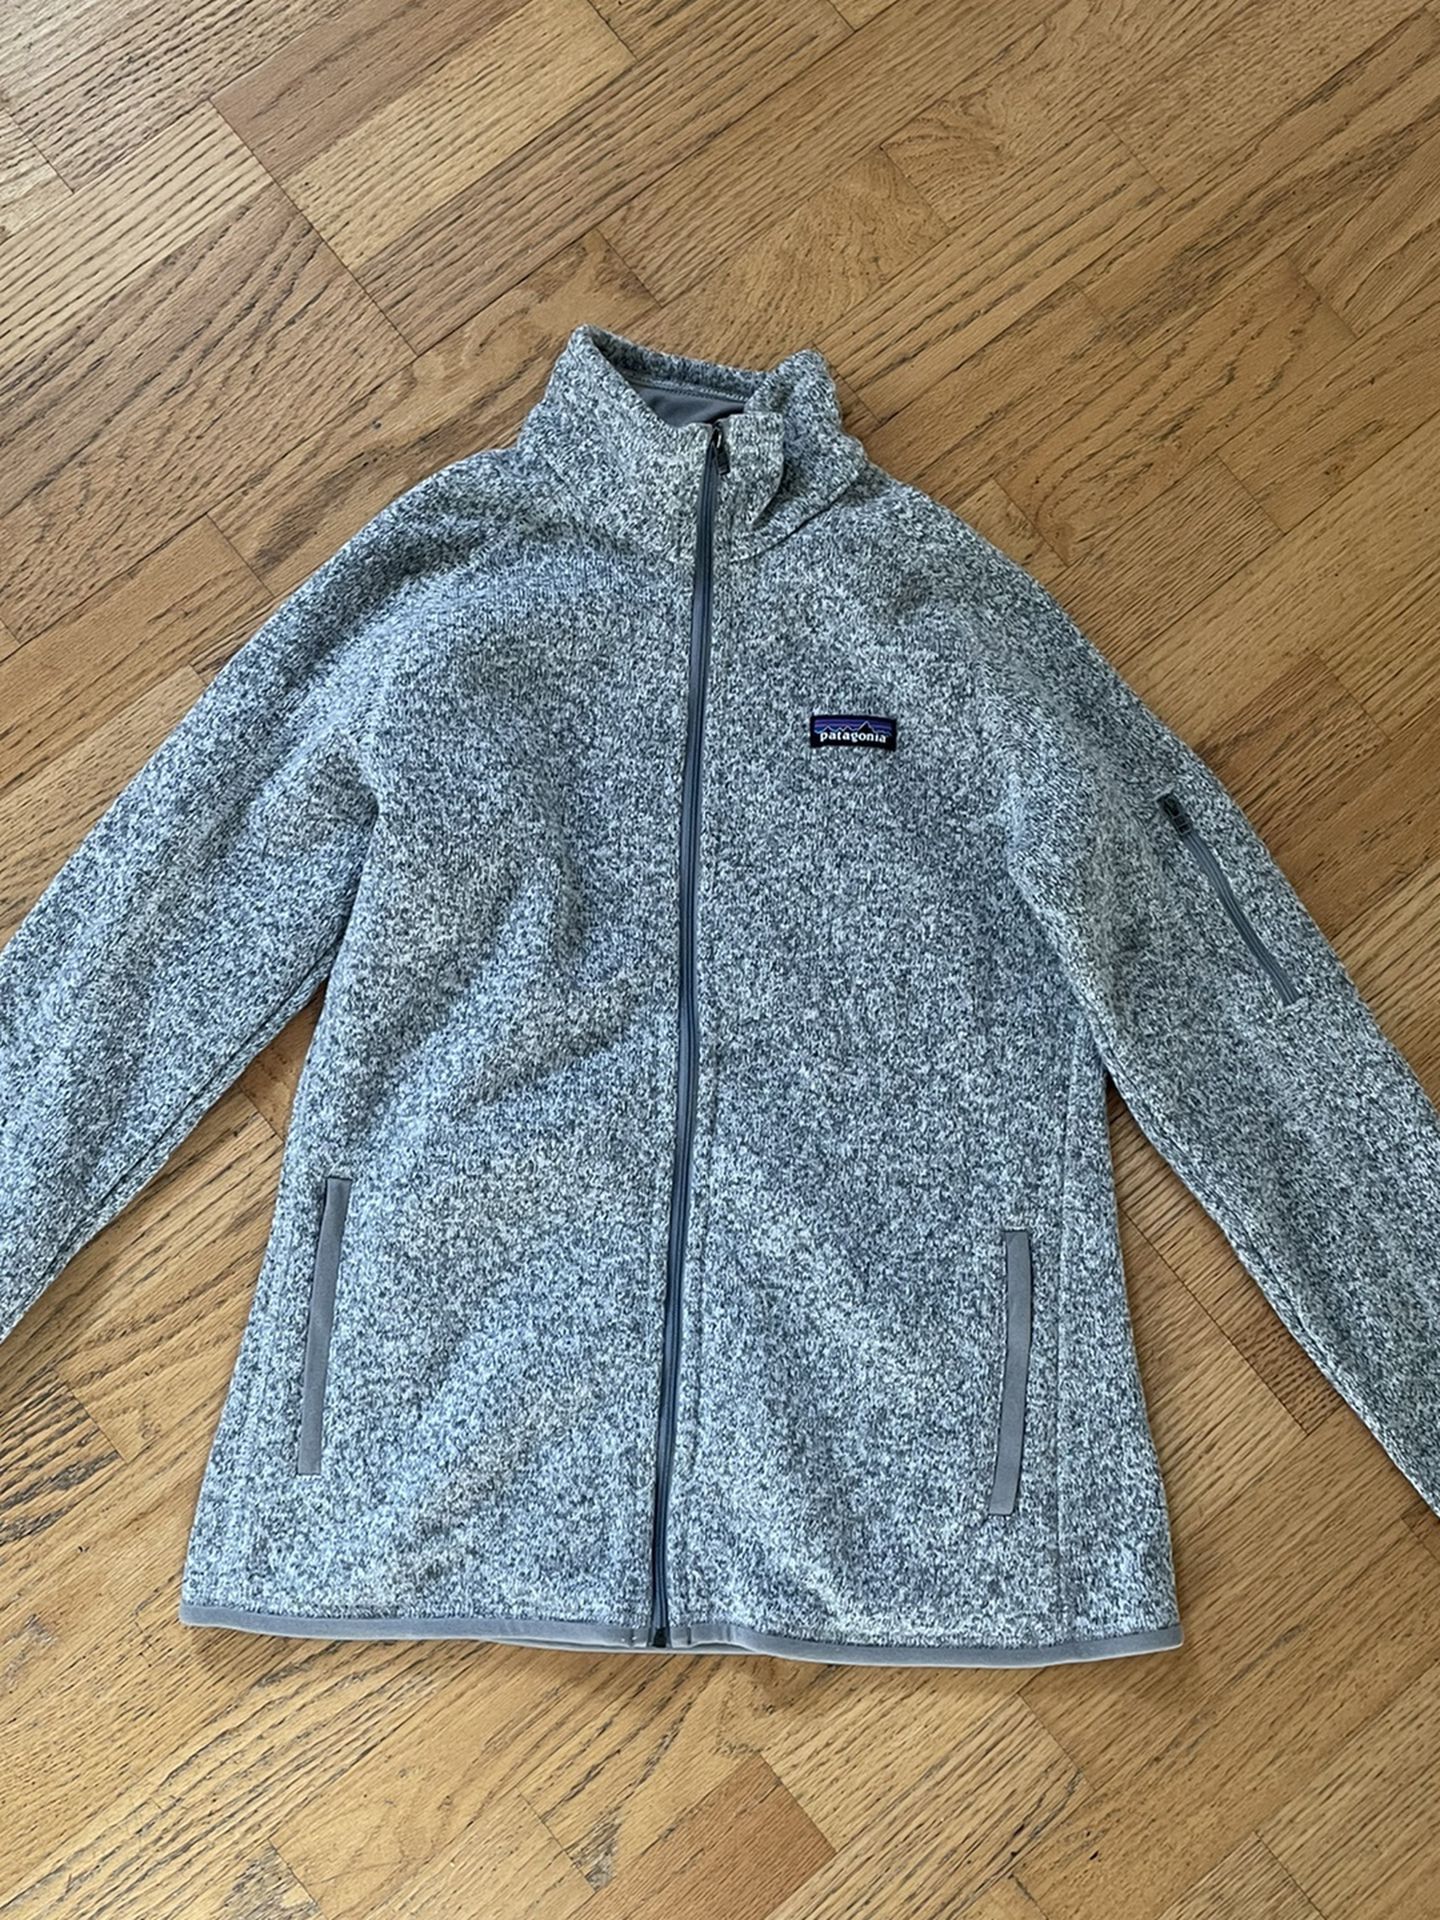 Full Zip Women’s Patagonia Fleece Sweater